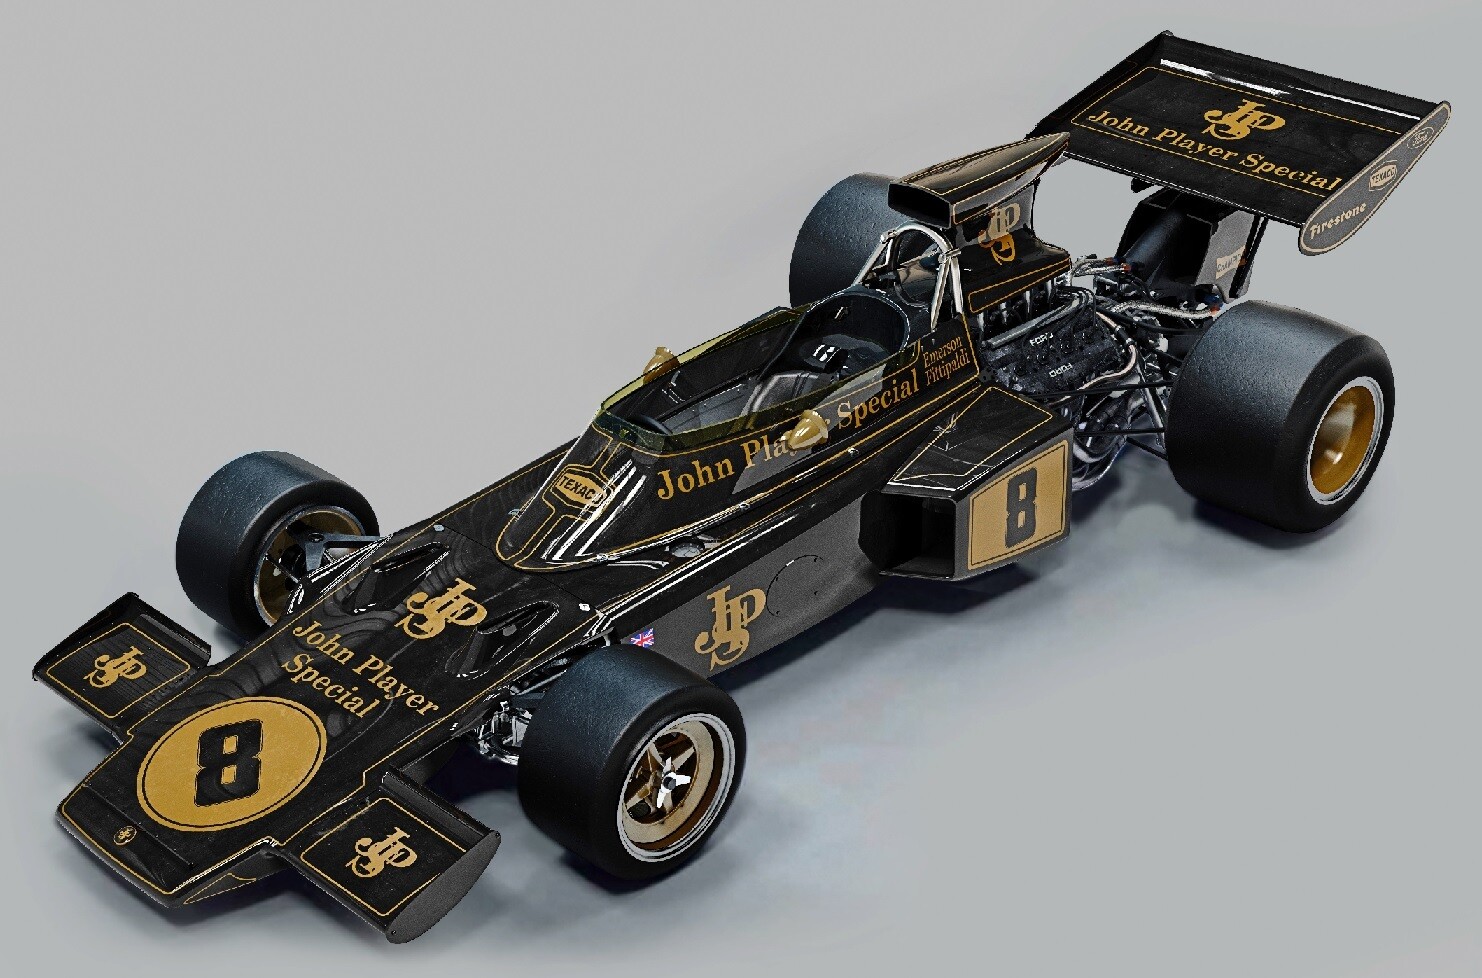 Pocher 1/8 Lotus 72D 1972 British GP - Emerson Fittipaldi